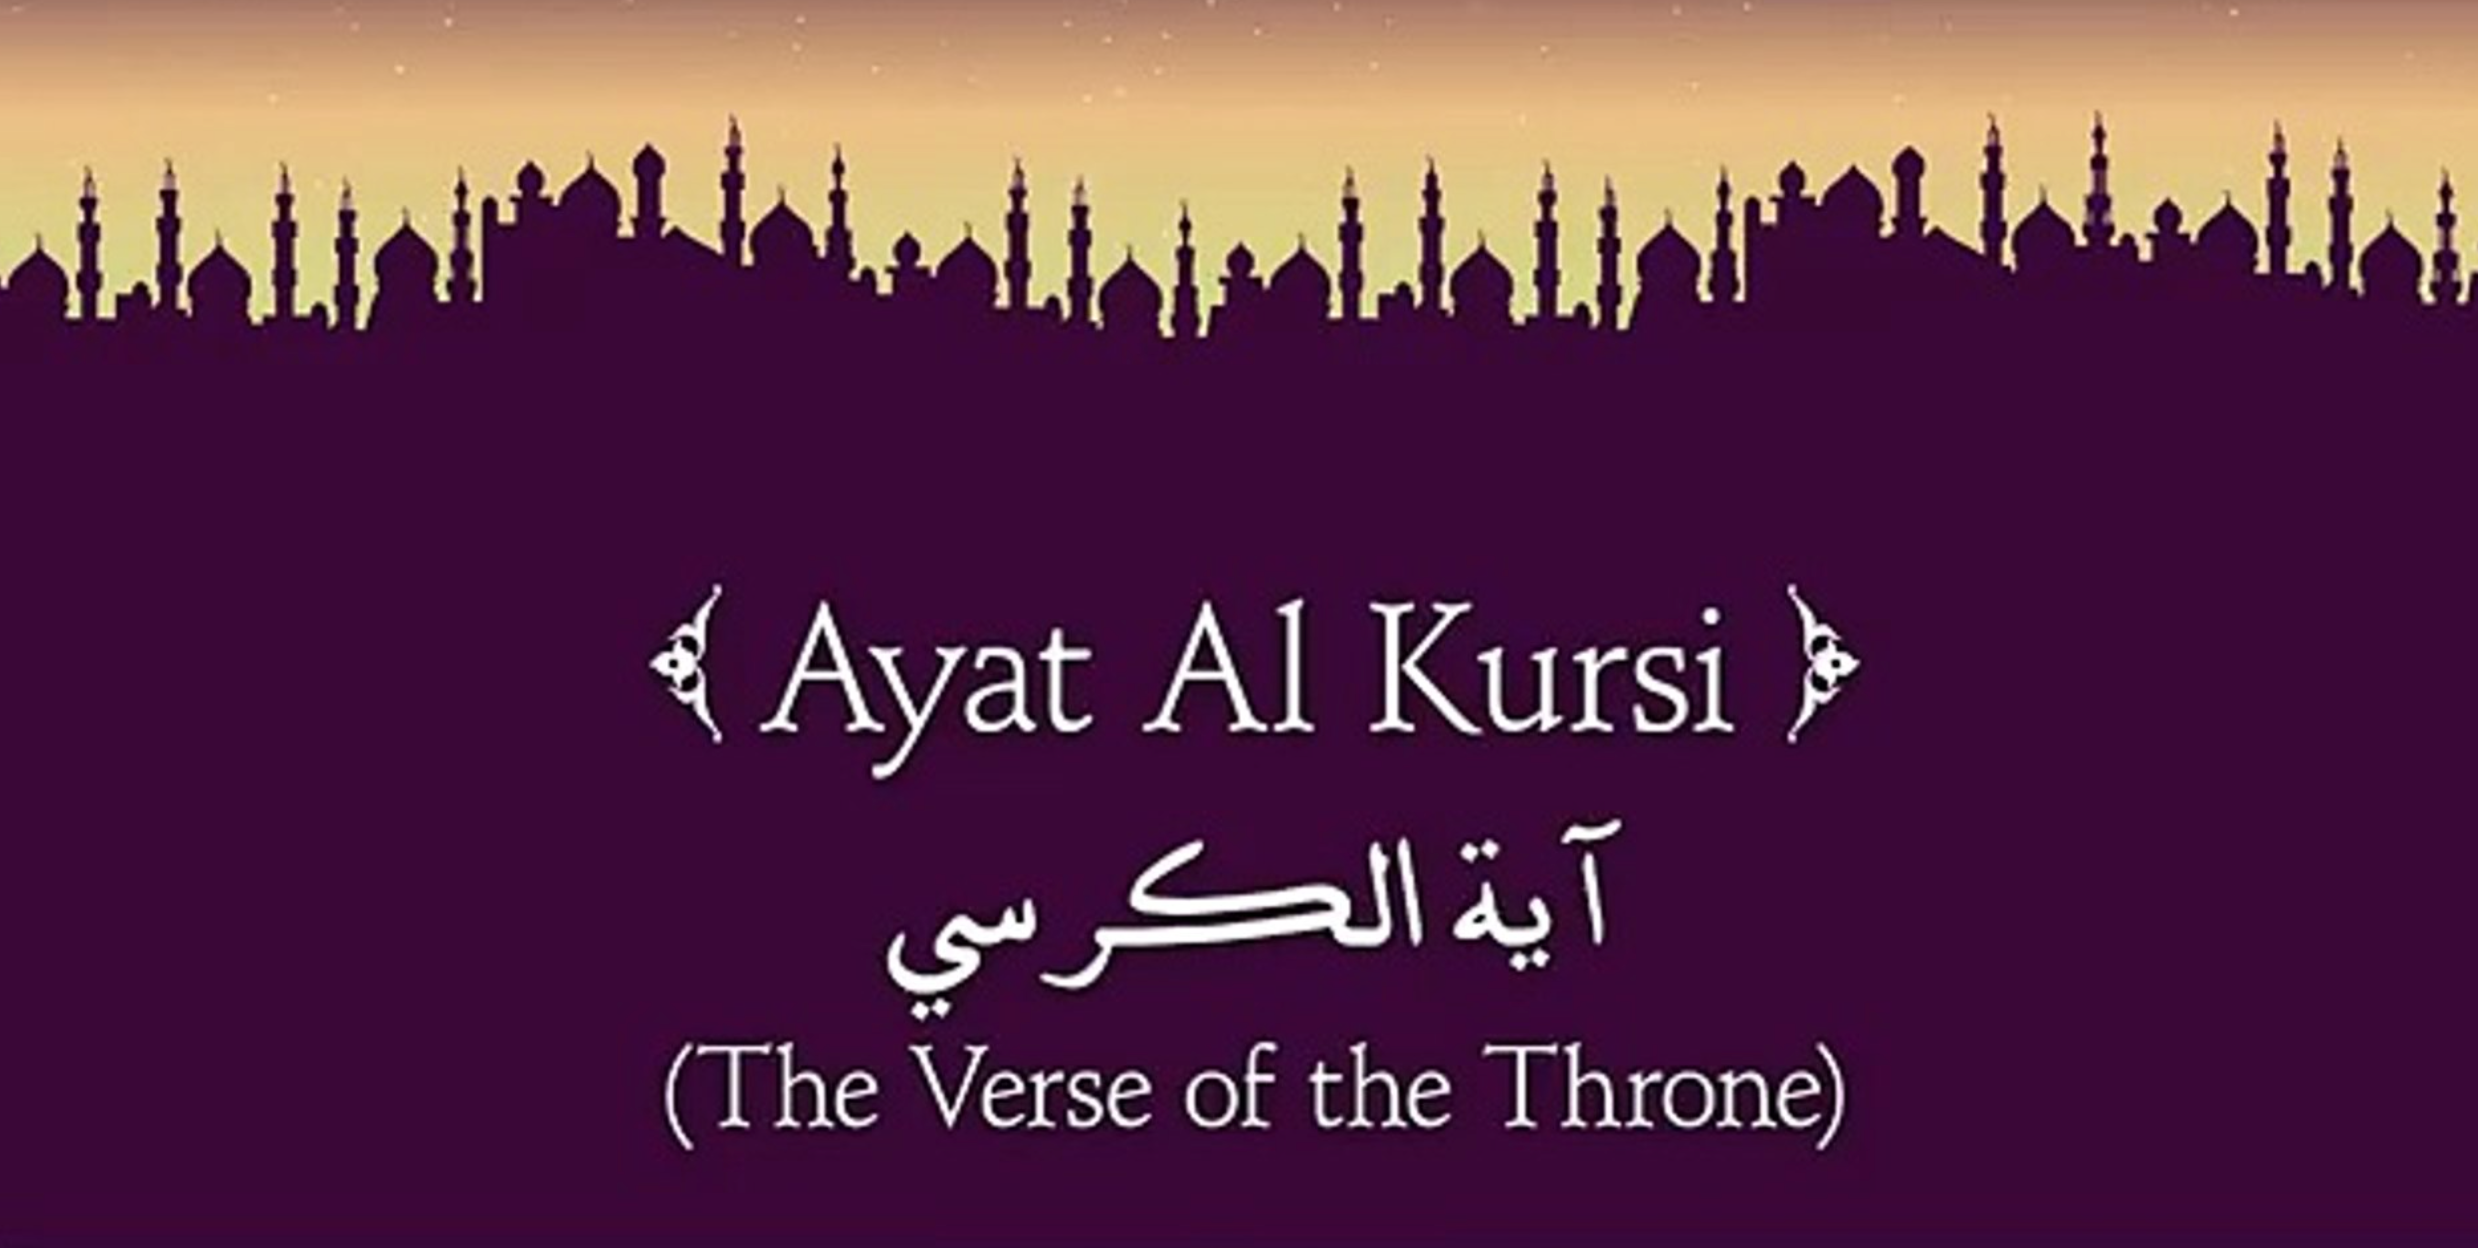 Benefits of Ayatul Kursi